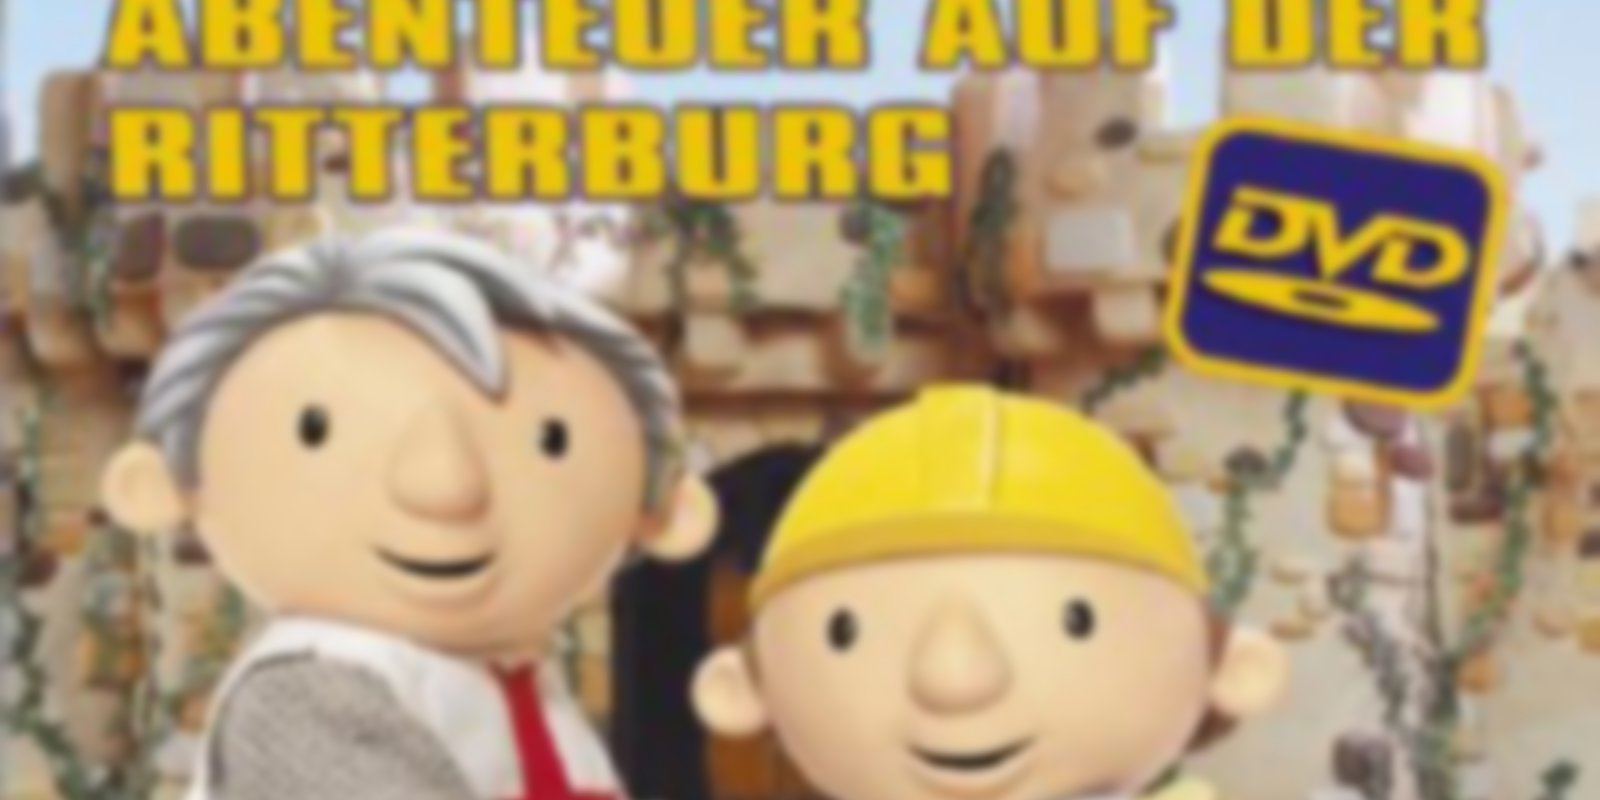 Bob der Baumeister - Abenteuer auf der Ritterburg